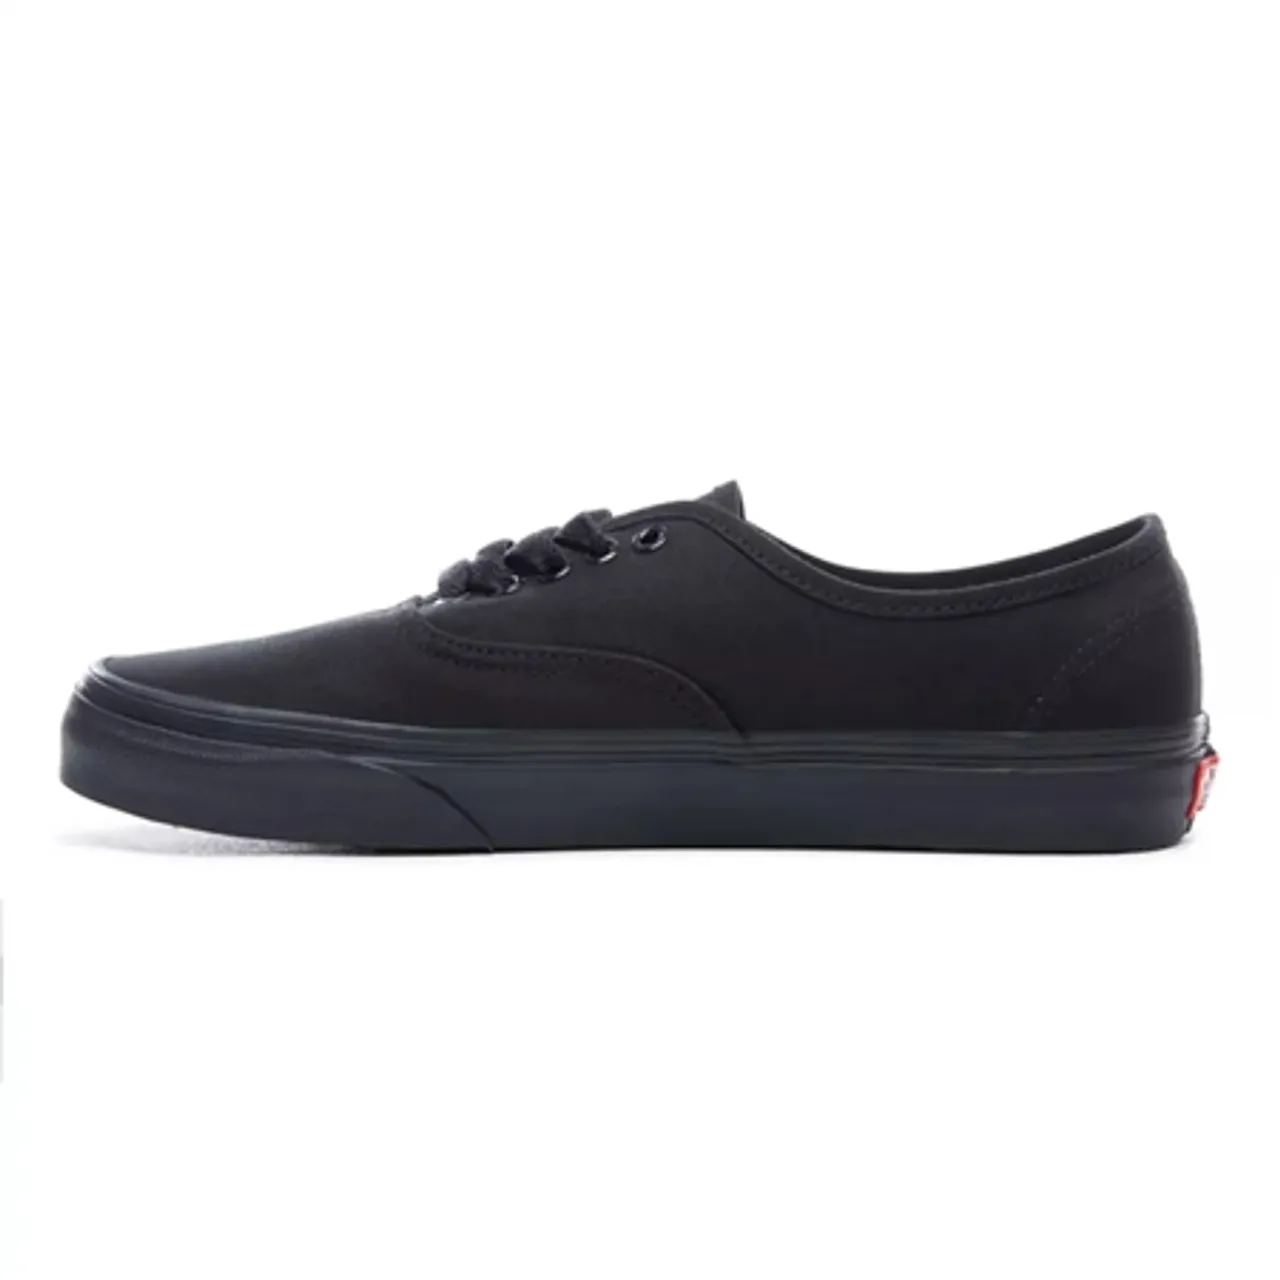 Vans Authentic Shoes  - Black & Black - UK 3 (EU 35)